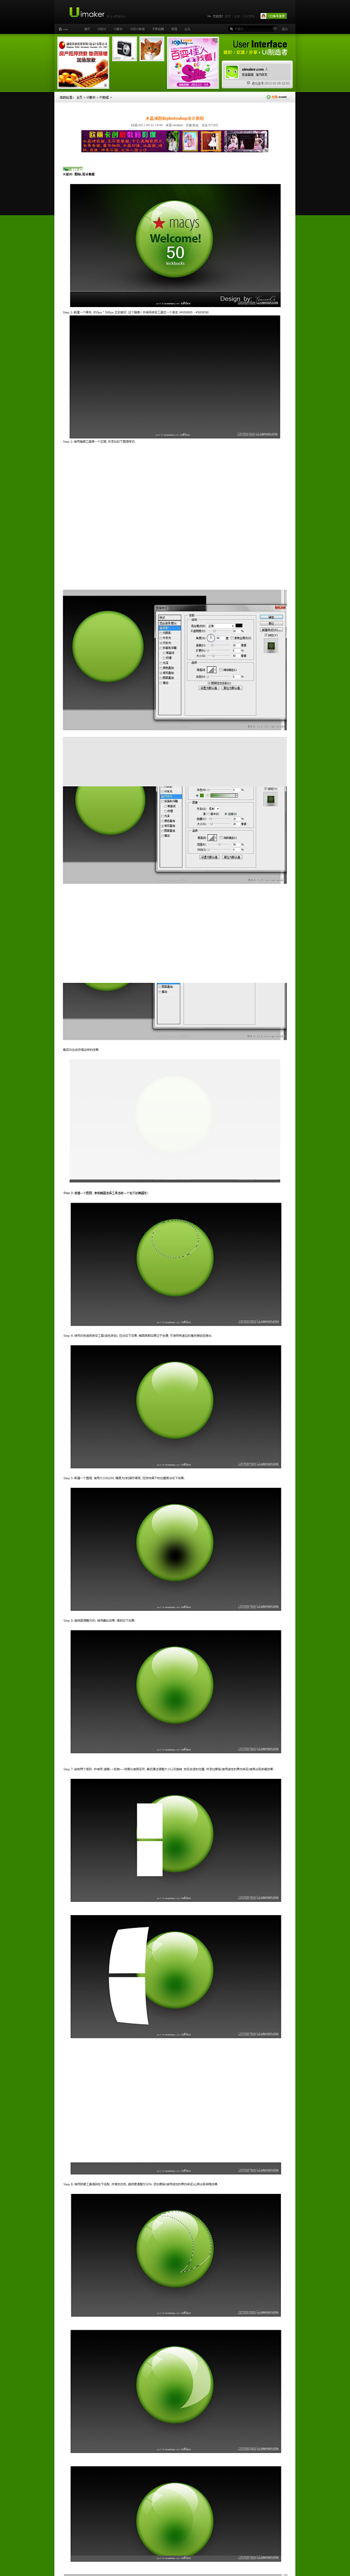 水晶球图标photoshop设计教程_U...